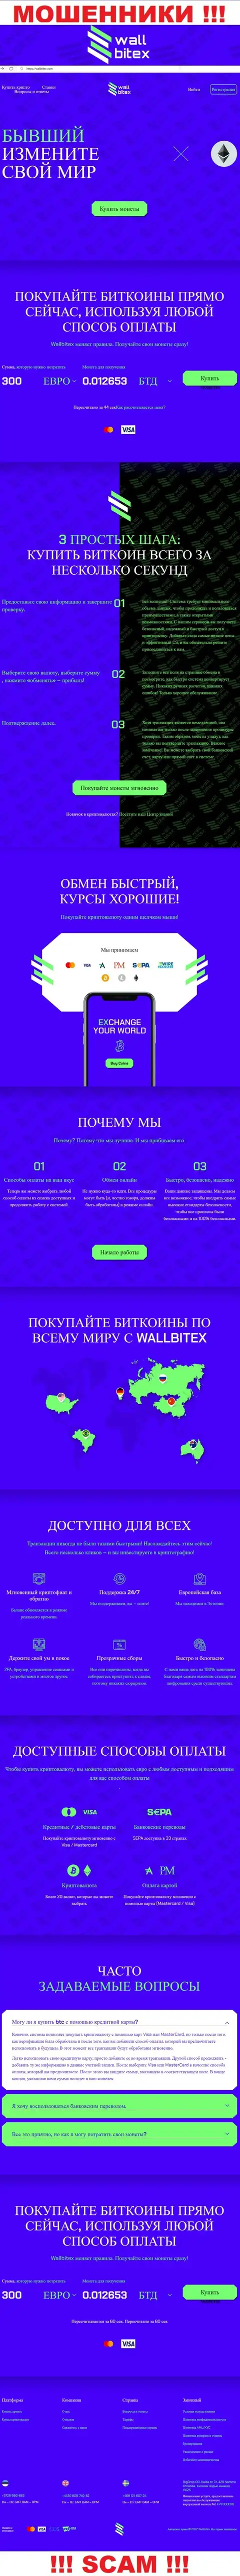 WallBitex Com - это официальный сайт неправомерно действующей конторы WallBitex